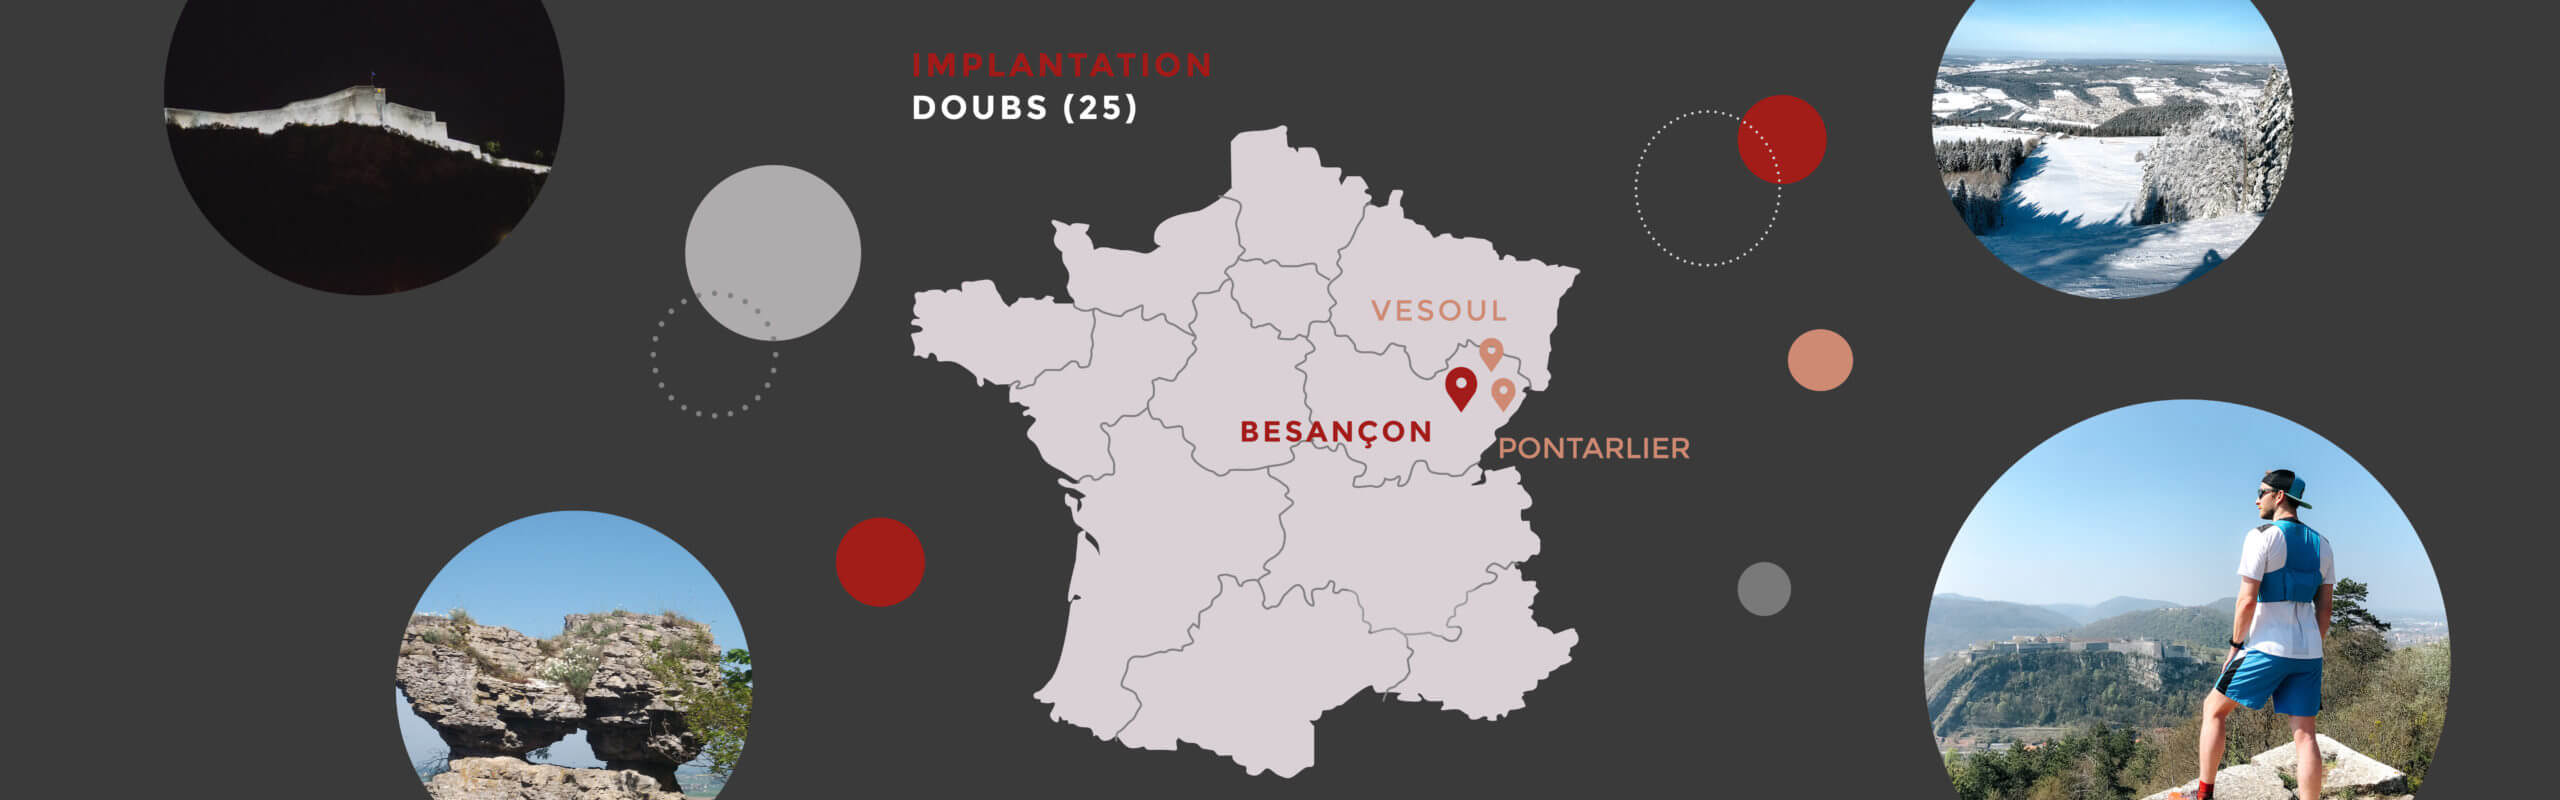 Nos implantations à Besançon, Vesoul et Pontarlier